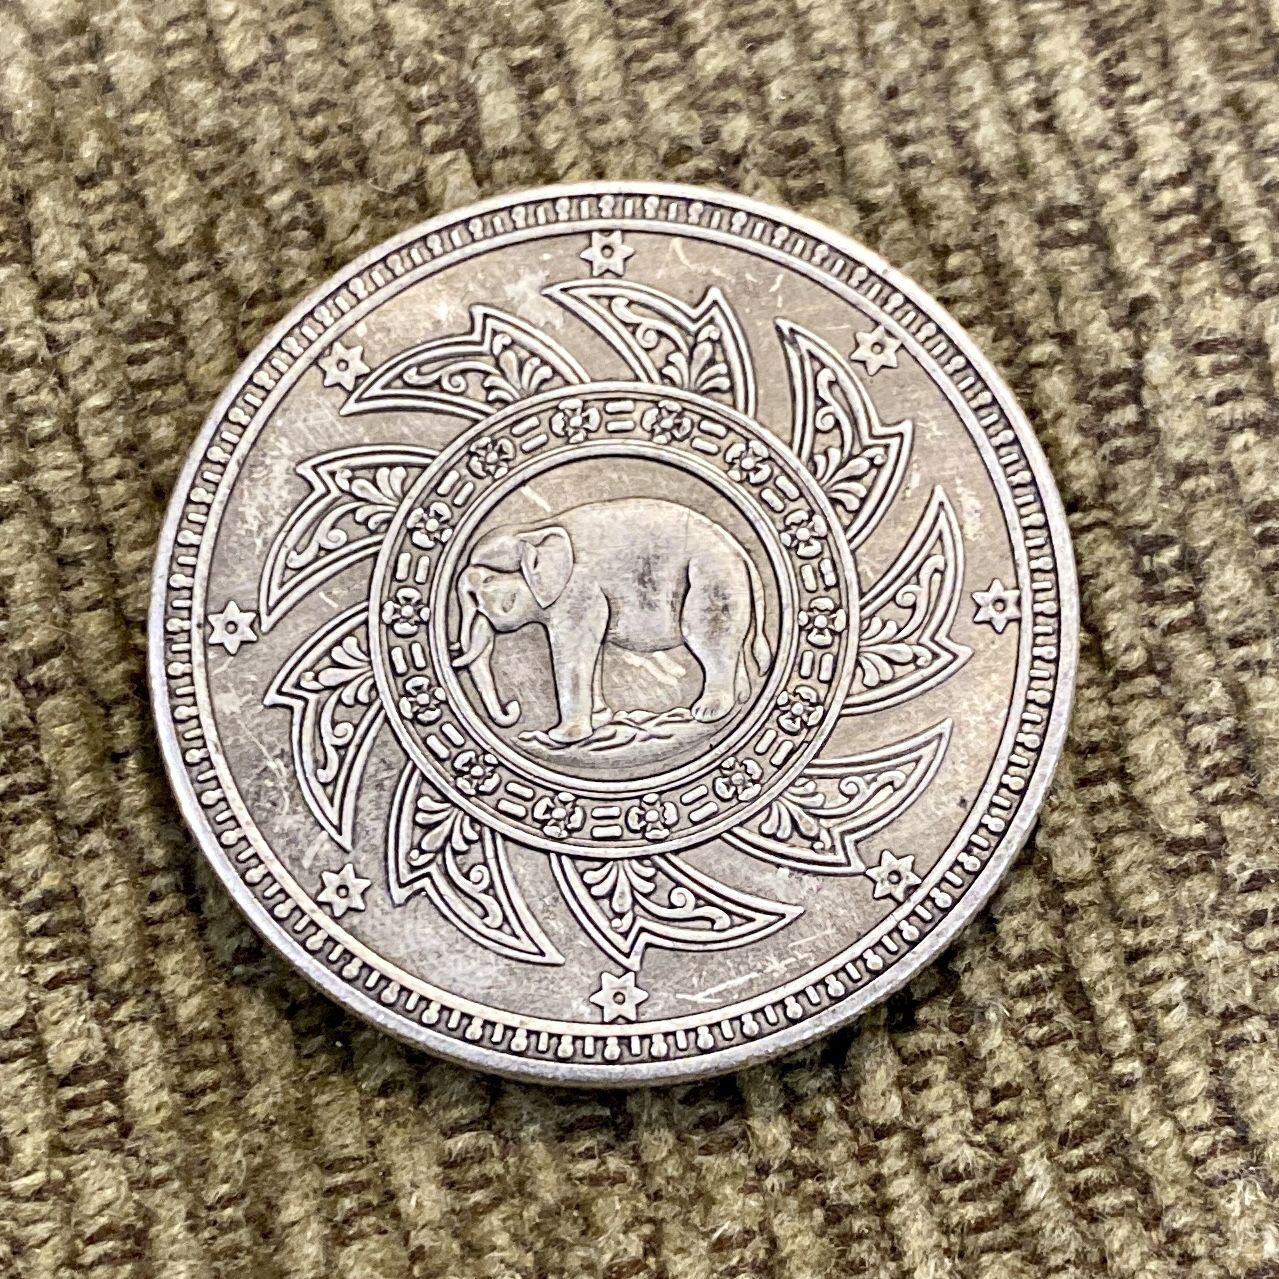 Antique Silver Thai Coins